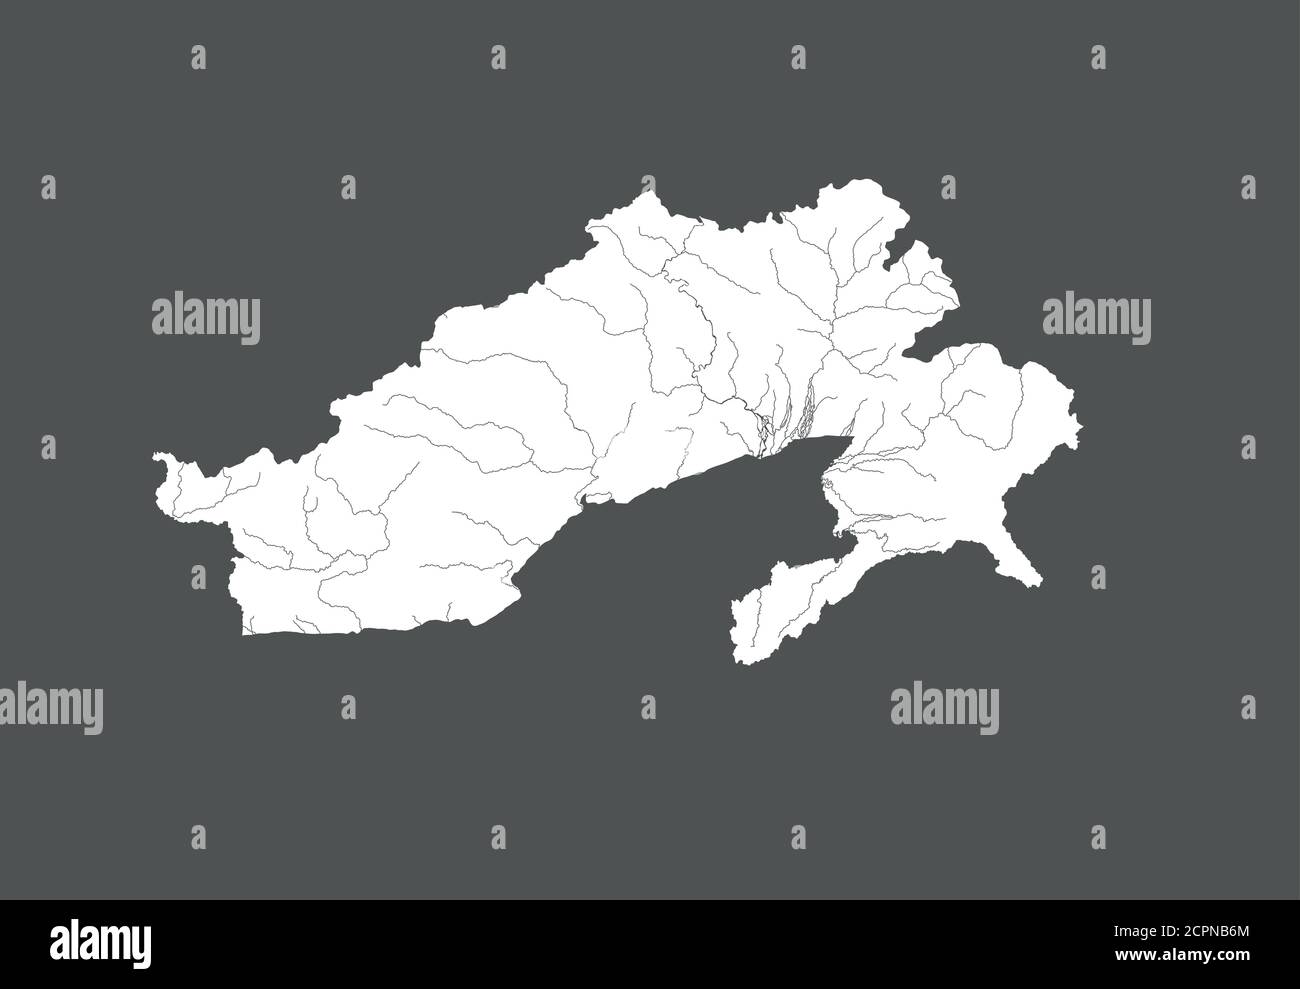 Indien Staaten - Karte von Arunachal Pradesh. Handgemacht. Flüsse und Seen werden angezeigt. Bitte sehen Sie sich meine anderen Bilder von kartographischen Serien an - sie sind alle V Stock Vektor